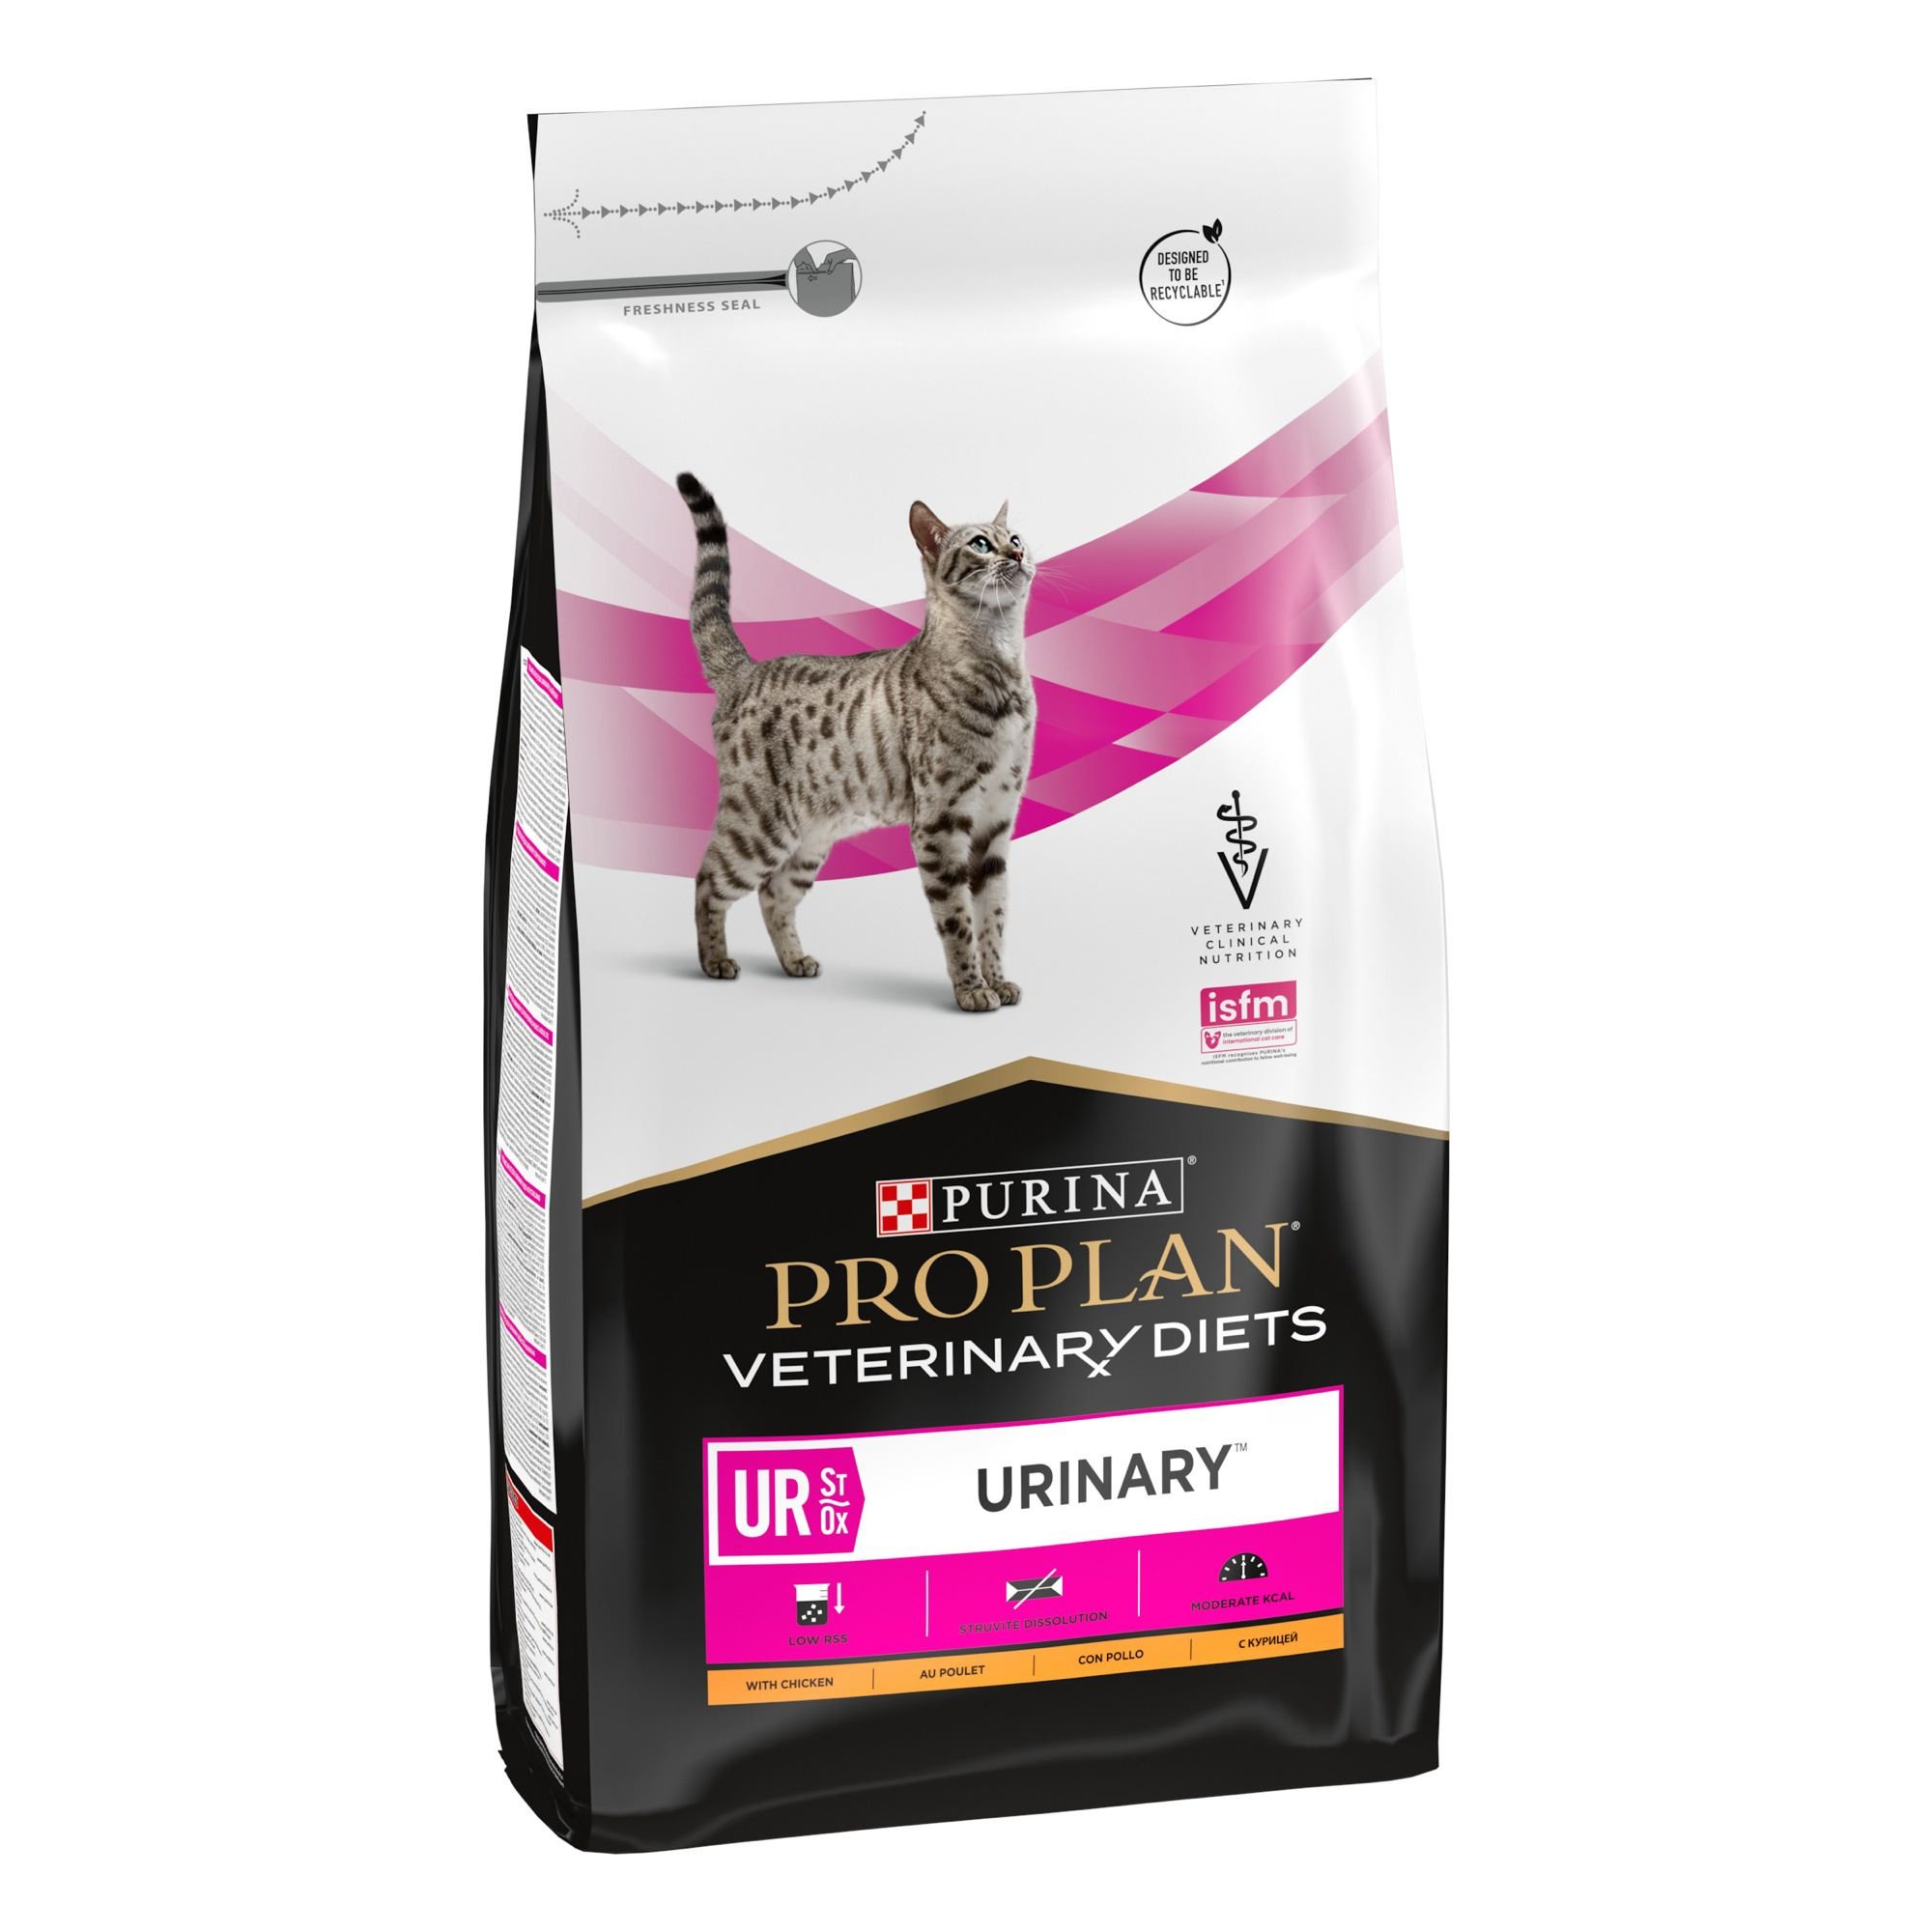 Сухой корм для кошек Purina Pro Plan Veterinary Diets UR Urinary, с курицей, 5 кг - фото 2